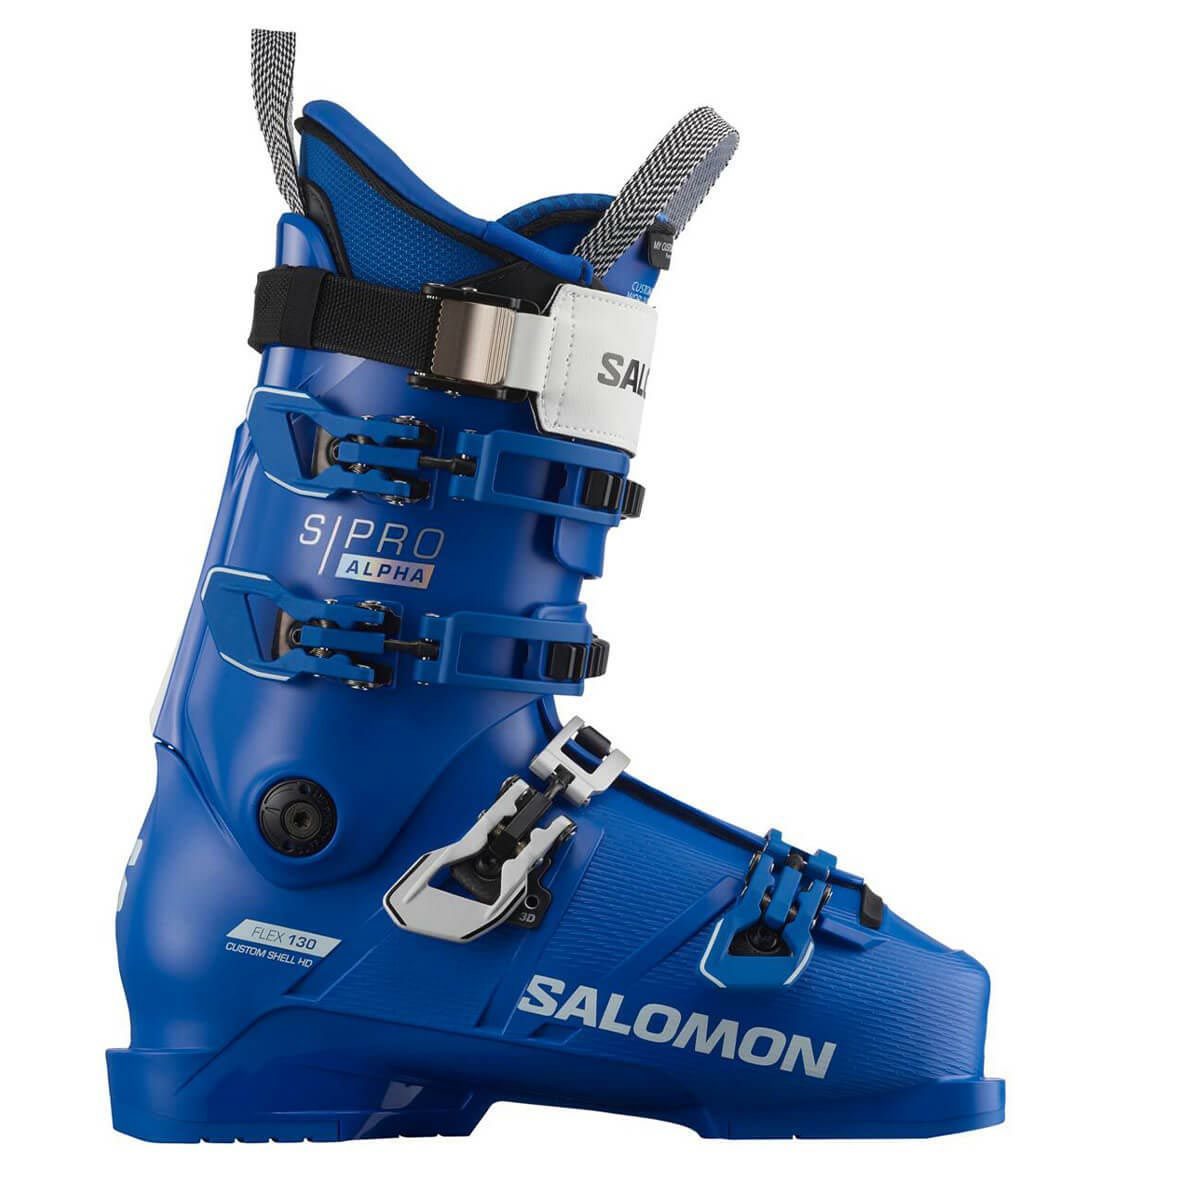 発送日は平日のみとなります【新品】SALOMON サロモン S/RACE 130 スキーブーツ 27.5